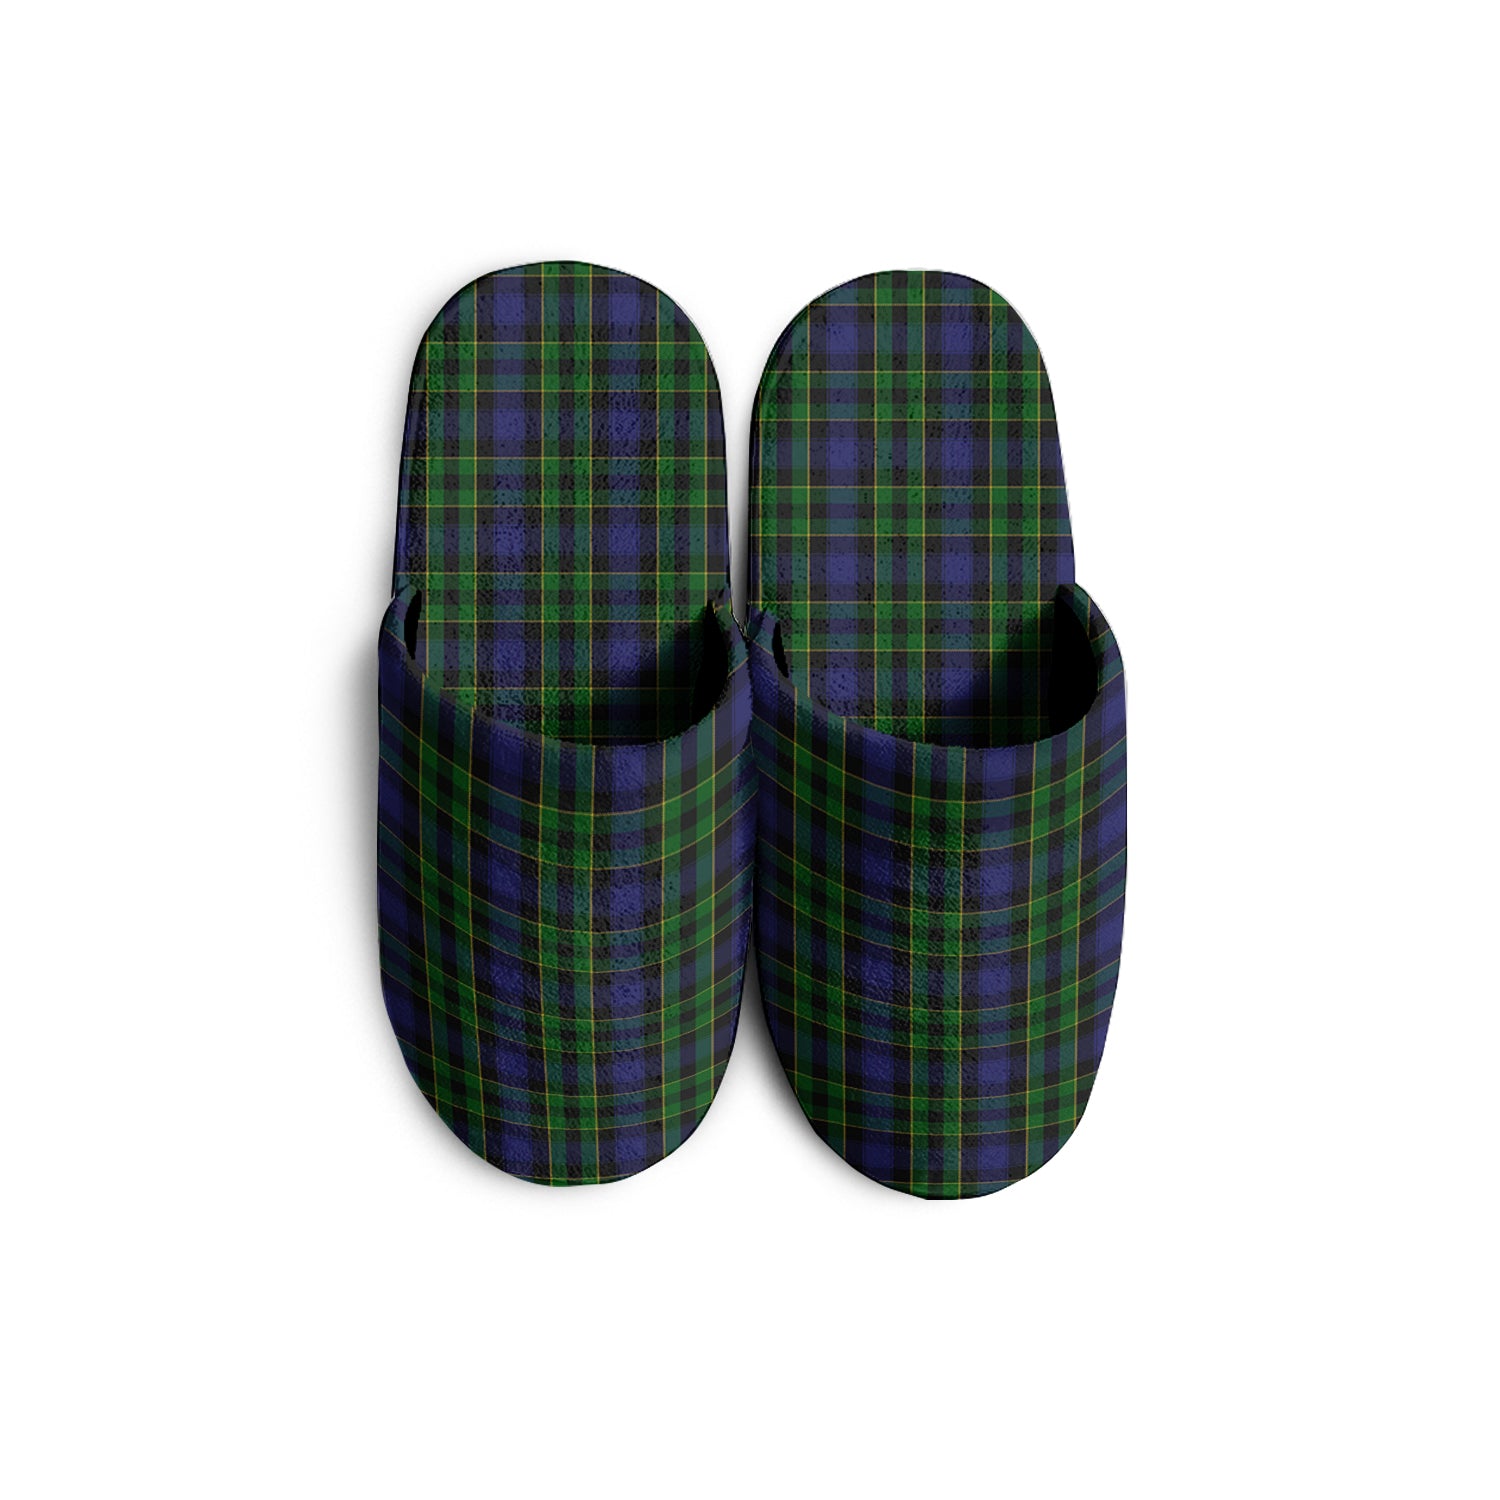 mowat-tartan-slippers-plaid-slippers